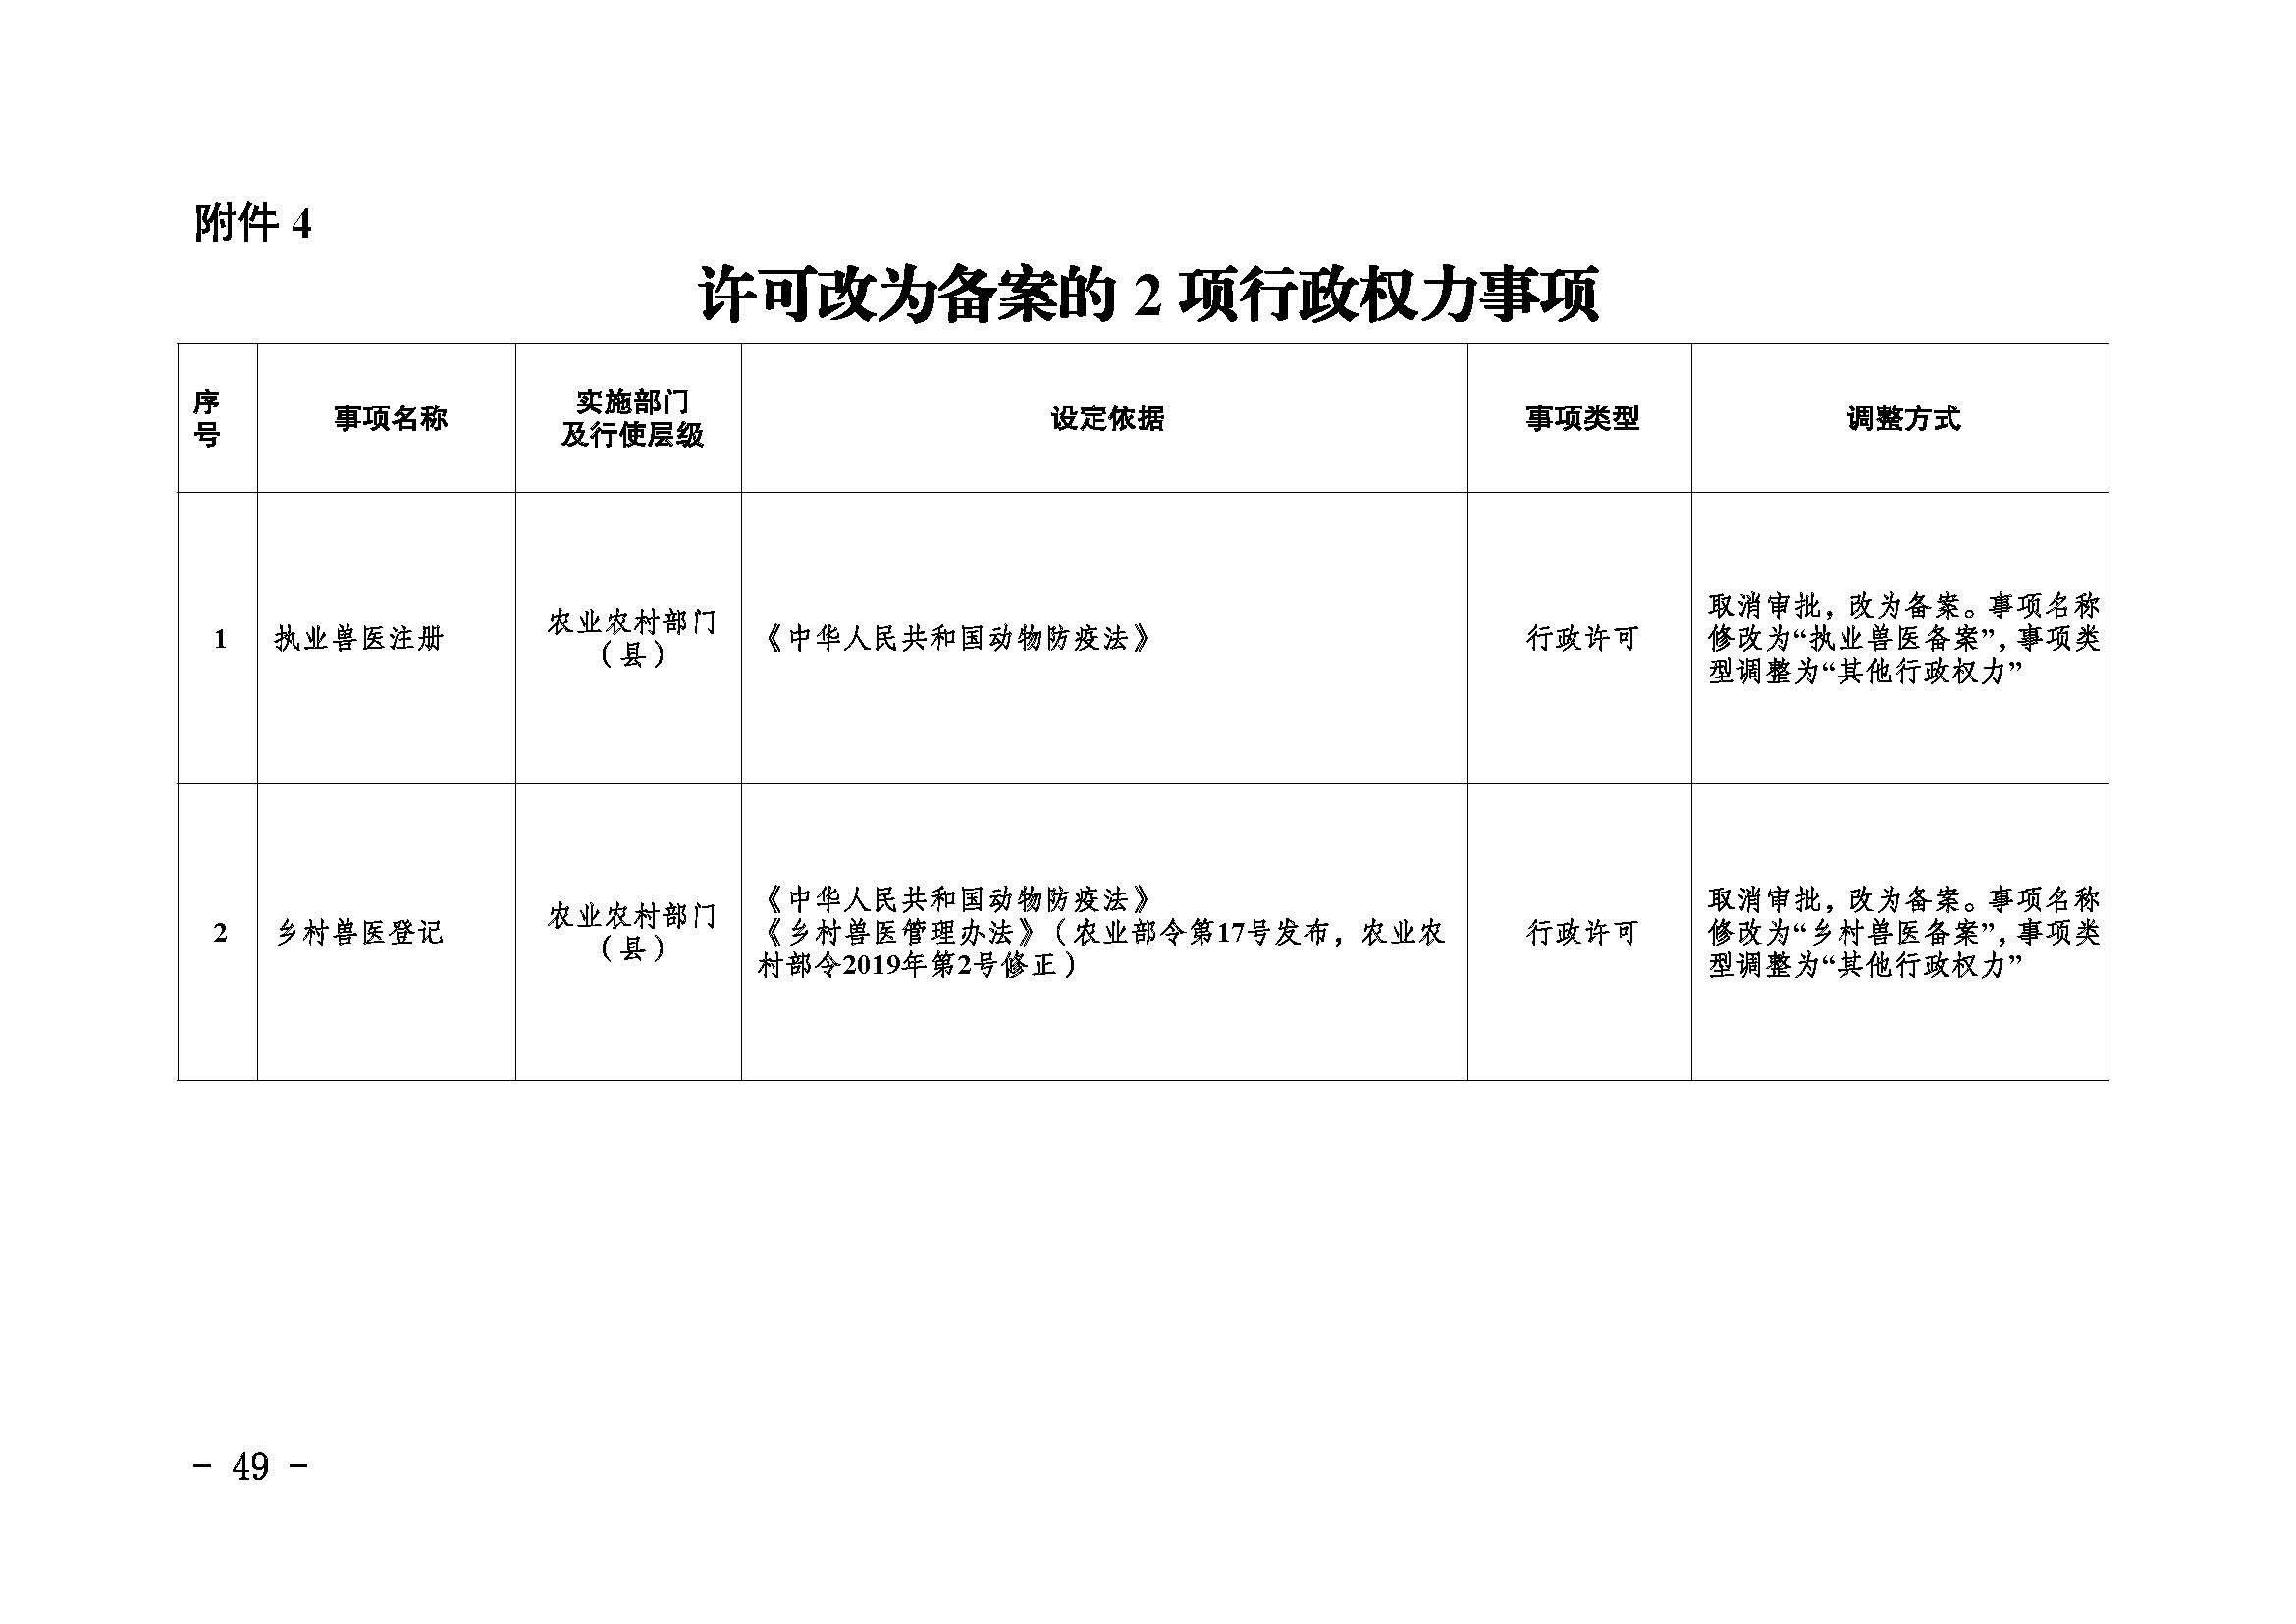 临沧市人民政府办公室关于做好调整370项行政权力事项工作的通知_页面_49